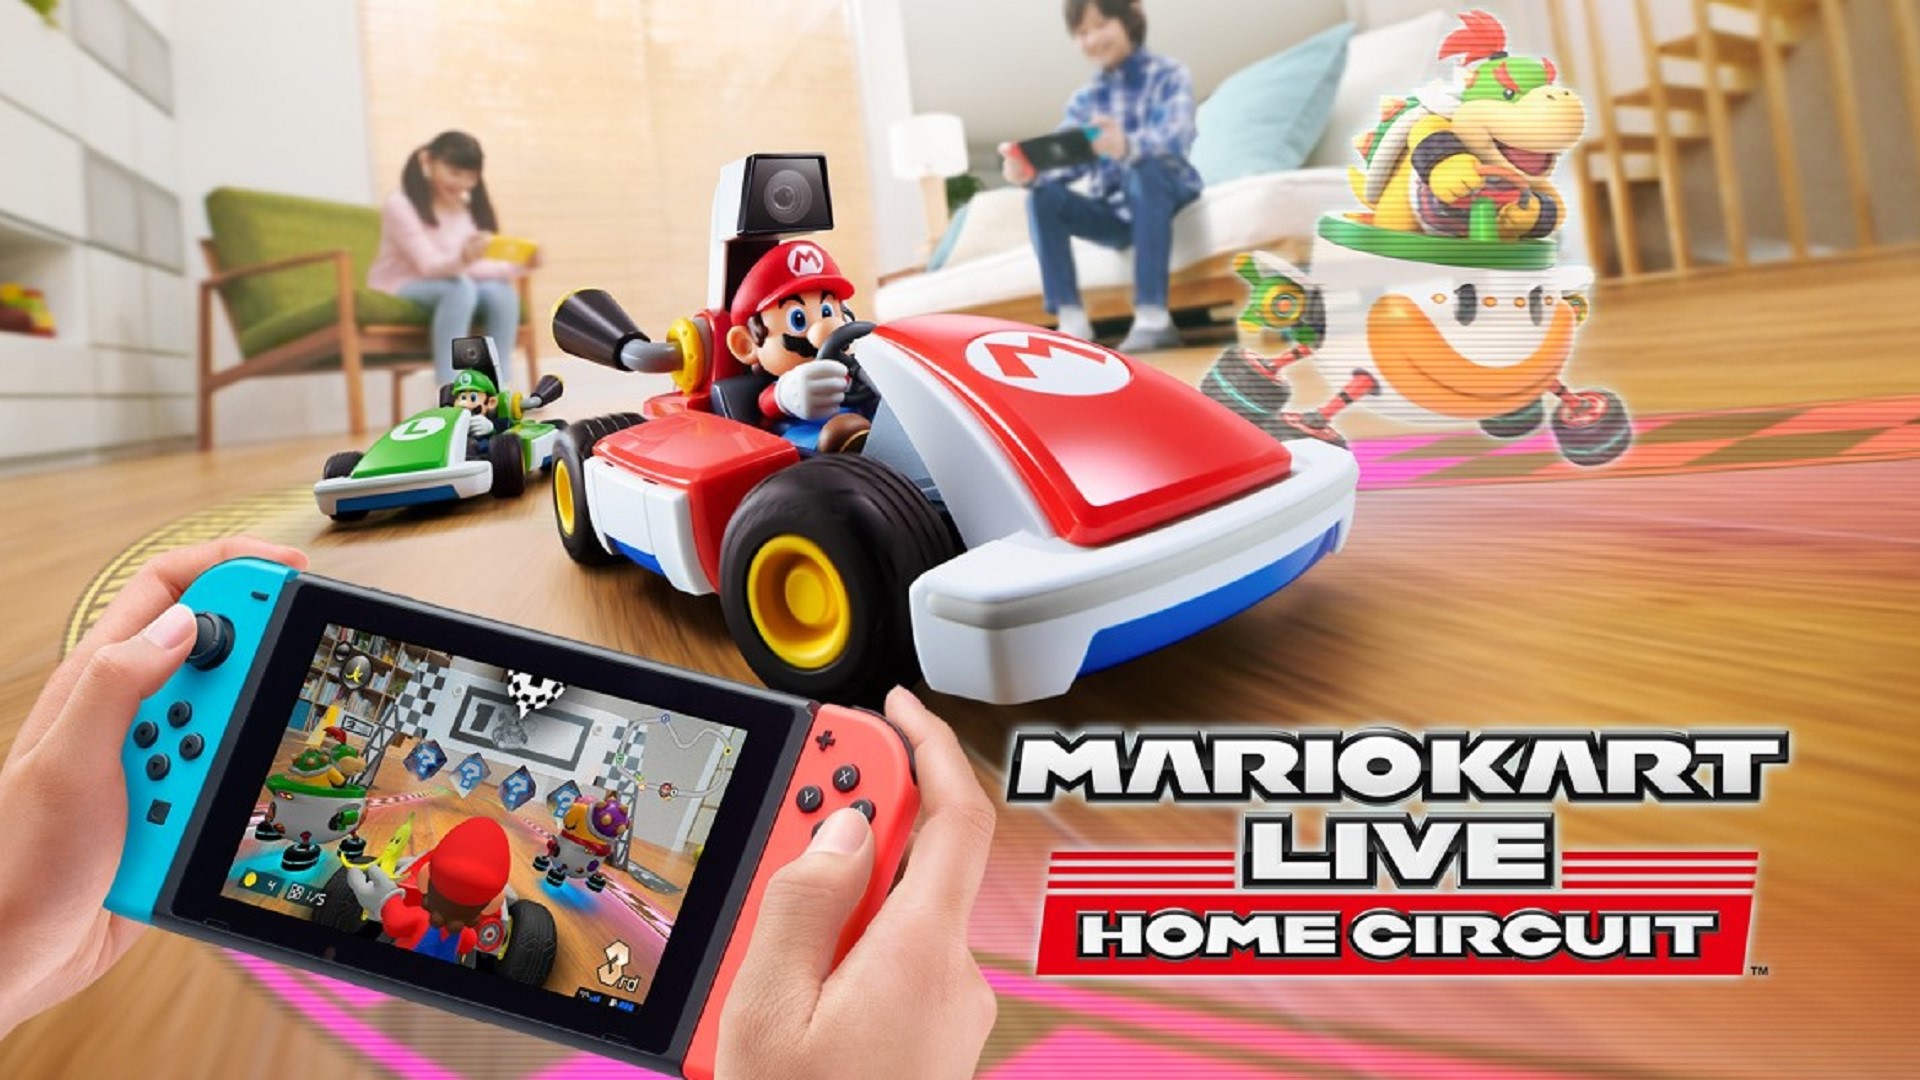 Mario Kart Live: Оголошено про домашню трасу, використовуються справжні автомобілі на радіоуправлінні